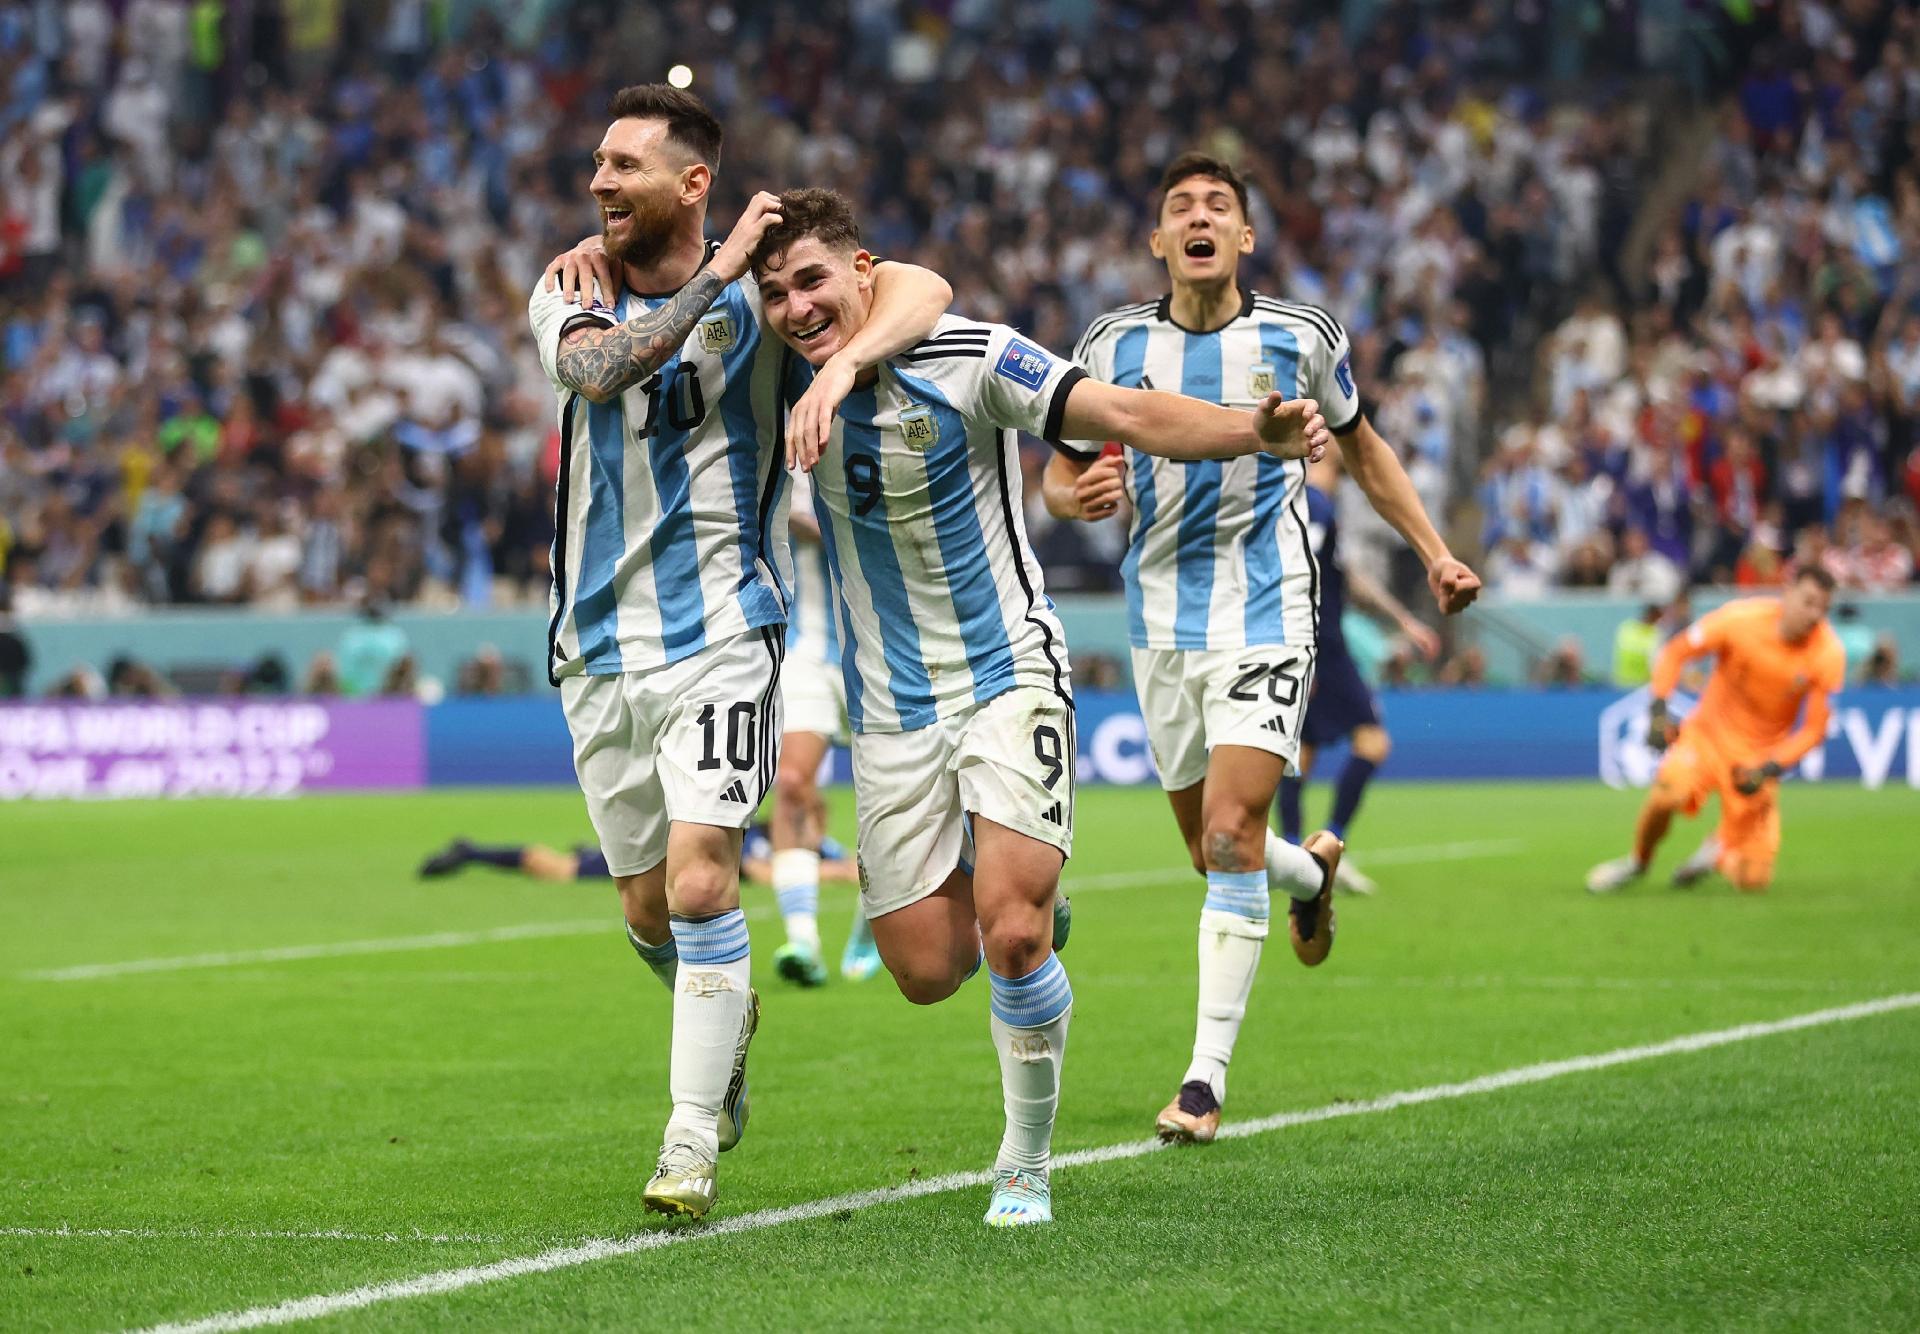 Após queda por erro em uniforme, argentinas vencem e choram - 08/08/2019 -  Esporte - Folha